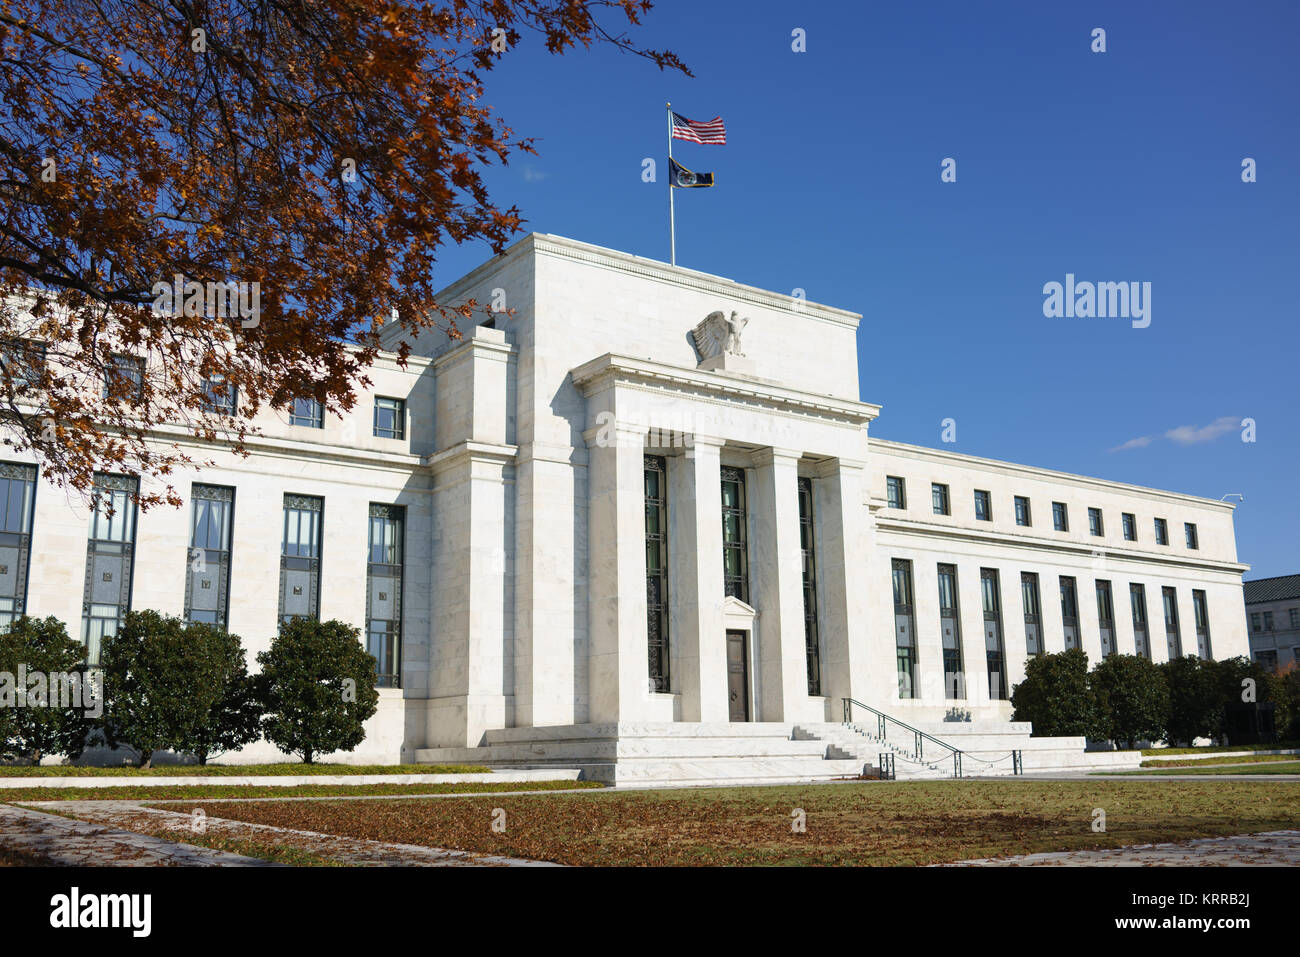 WASHINGTON, DC - die nationale Zentrale des US Federal Reserve System, die im Eccles Building in der Constitution Avenue in Washington DC untergebracht ist. Es beherbergt die Hauptgeschäftsstellen des Gouverneursrates der Federal Reserve. Die Federal Reserve oder die Fed, wie sie oft bekannt ist, ist das Zentralbankensystem der Vereinigten Staaten. Der mit dem Federal Reserve Act von 1913 festgelegte Leitsatz der US-Geldpolitik ist die Maximierung der Beschäftigung, die Stabilisierung der Preise und die Abschwächung der langfristigen Zinssätze. Benannt ist das Gebäude nach Marriner S. Eccles (1890-1977), Vorsitzender der föderalen R. Stockfoto